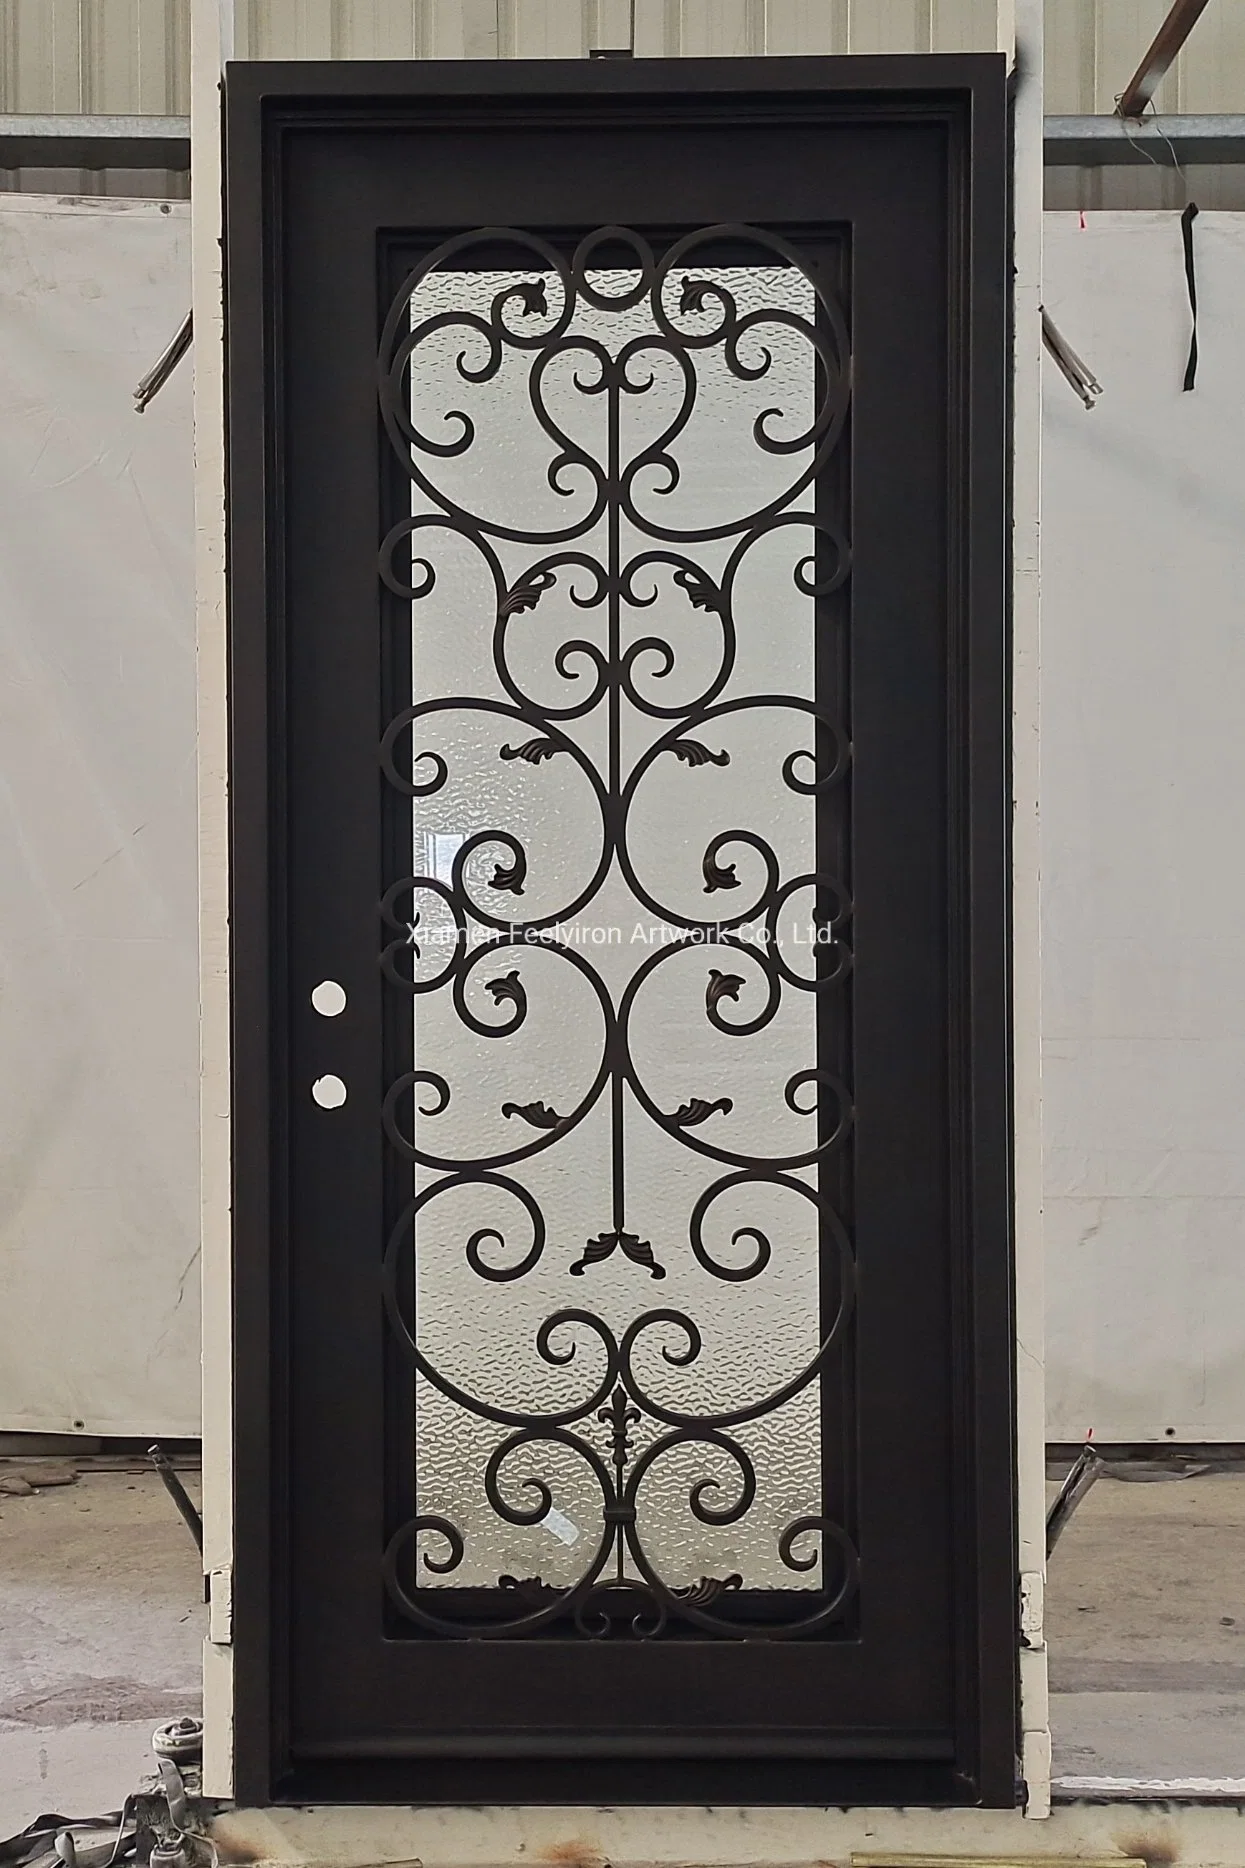 Diseño personalizado único de estilo popular de la bisagra interior delantera de la puerta de hierro forjado.